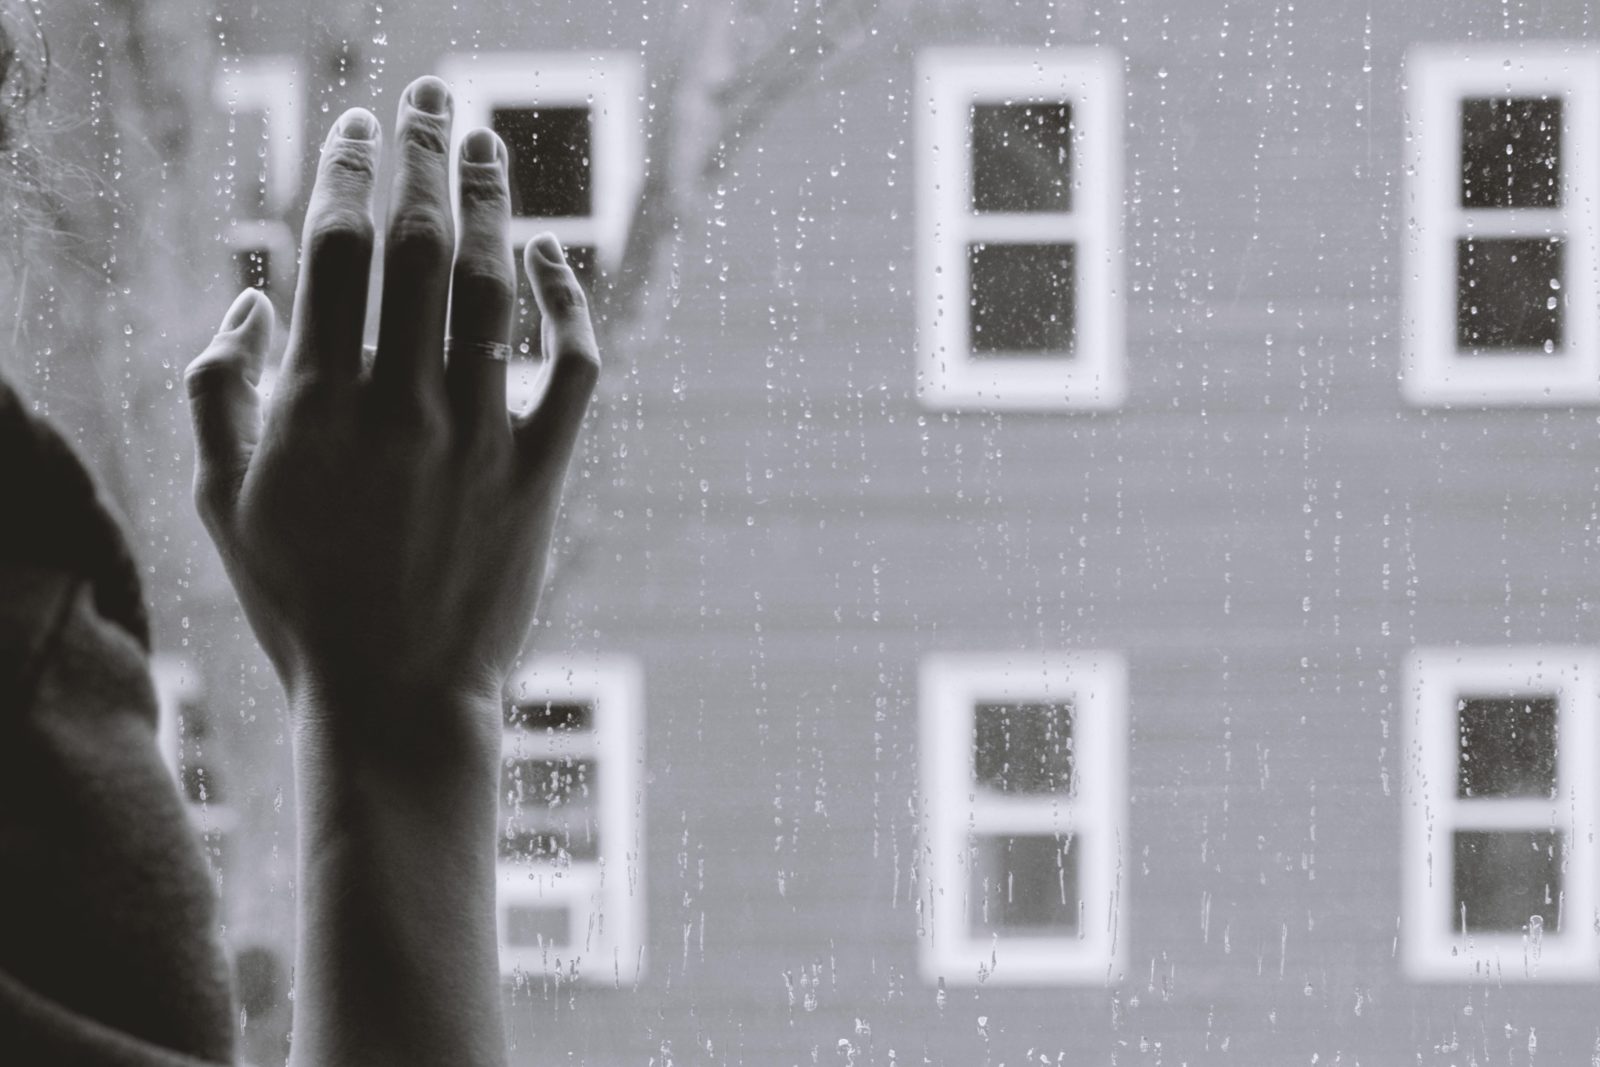 Schwarz-Weiß-Foto: Vorne eine Hand von hinten fotografiert, die an eine Fensterscheibe fasst. Im Hintergrund eine Häuserfassade mit vielen Fenstern.